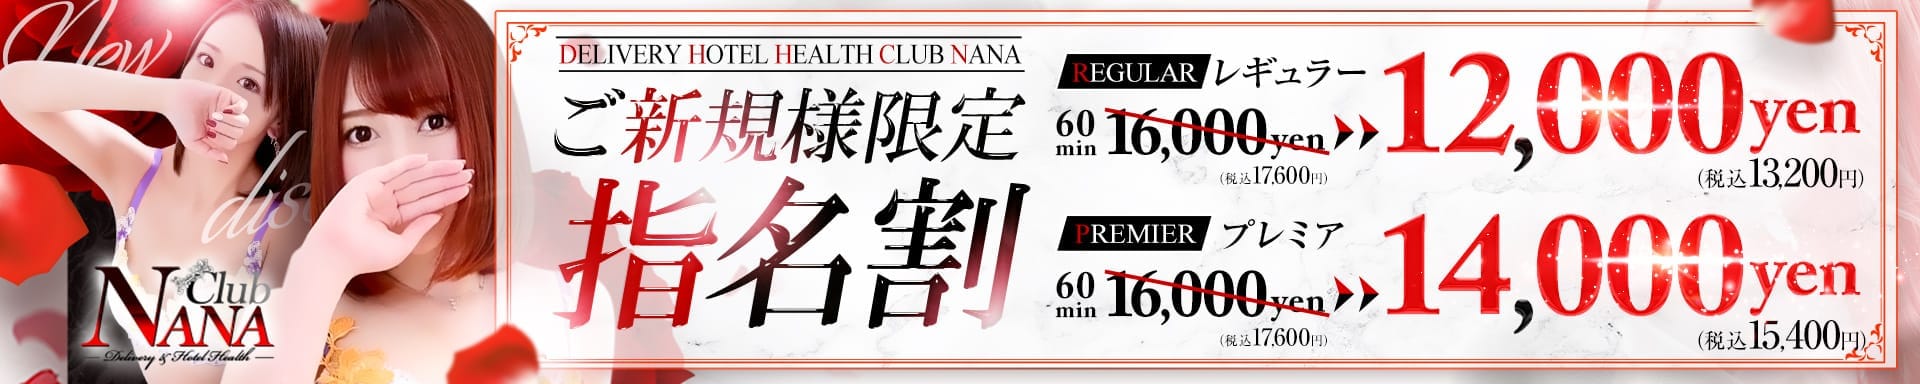 大阪デリヘル Club NANA - 梅田